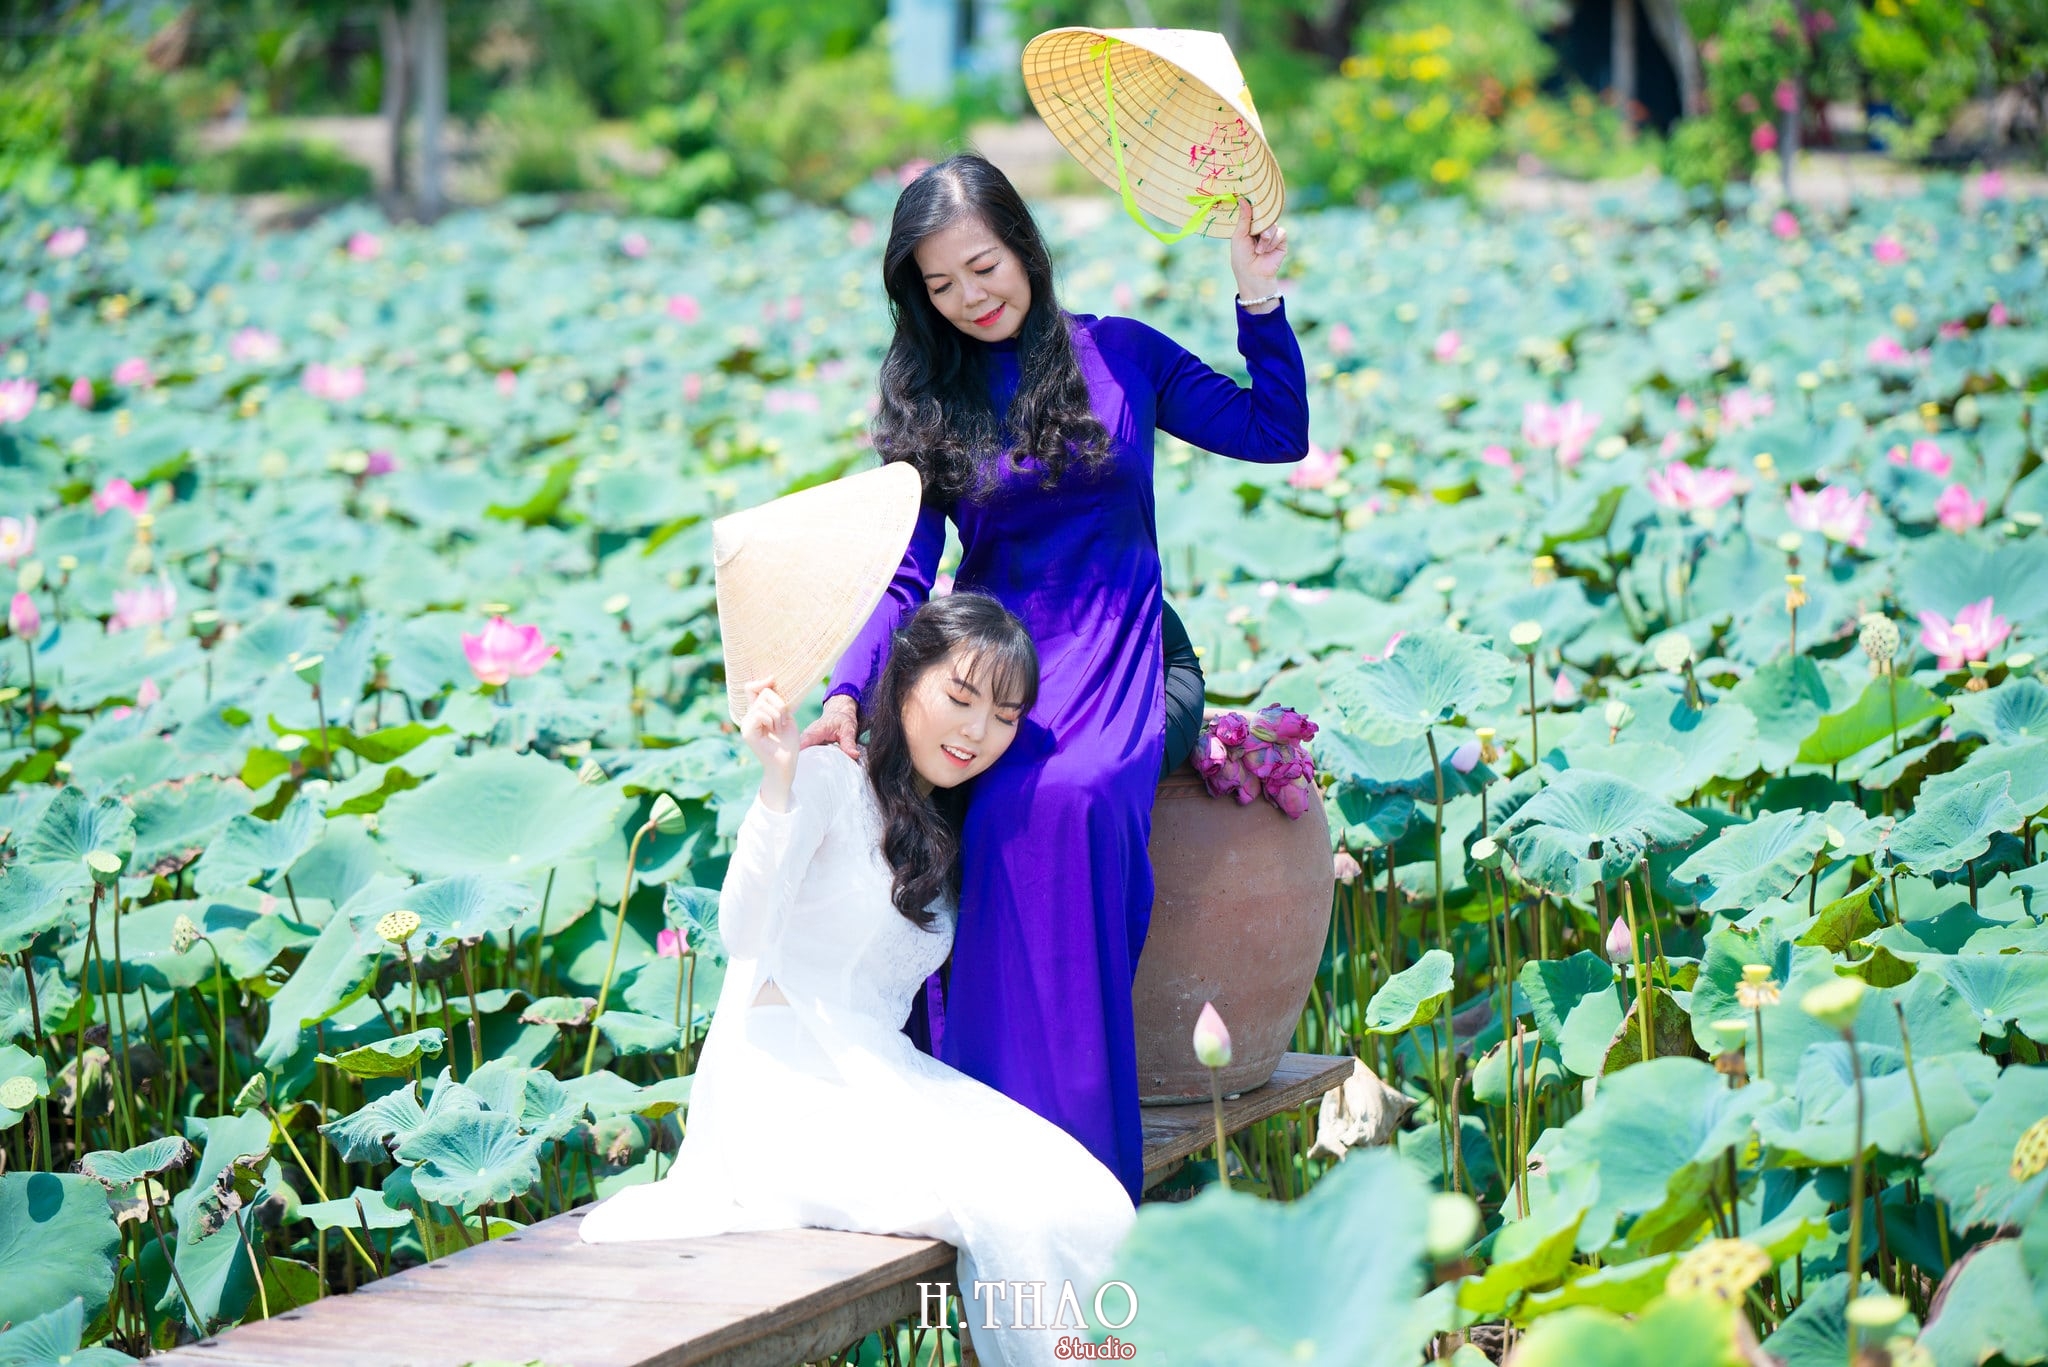 nh áo dài hoa sen 21 - 49 cách tạo dáng chụp ảnh với áo dài tuyệt đẹp - HThao Studio